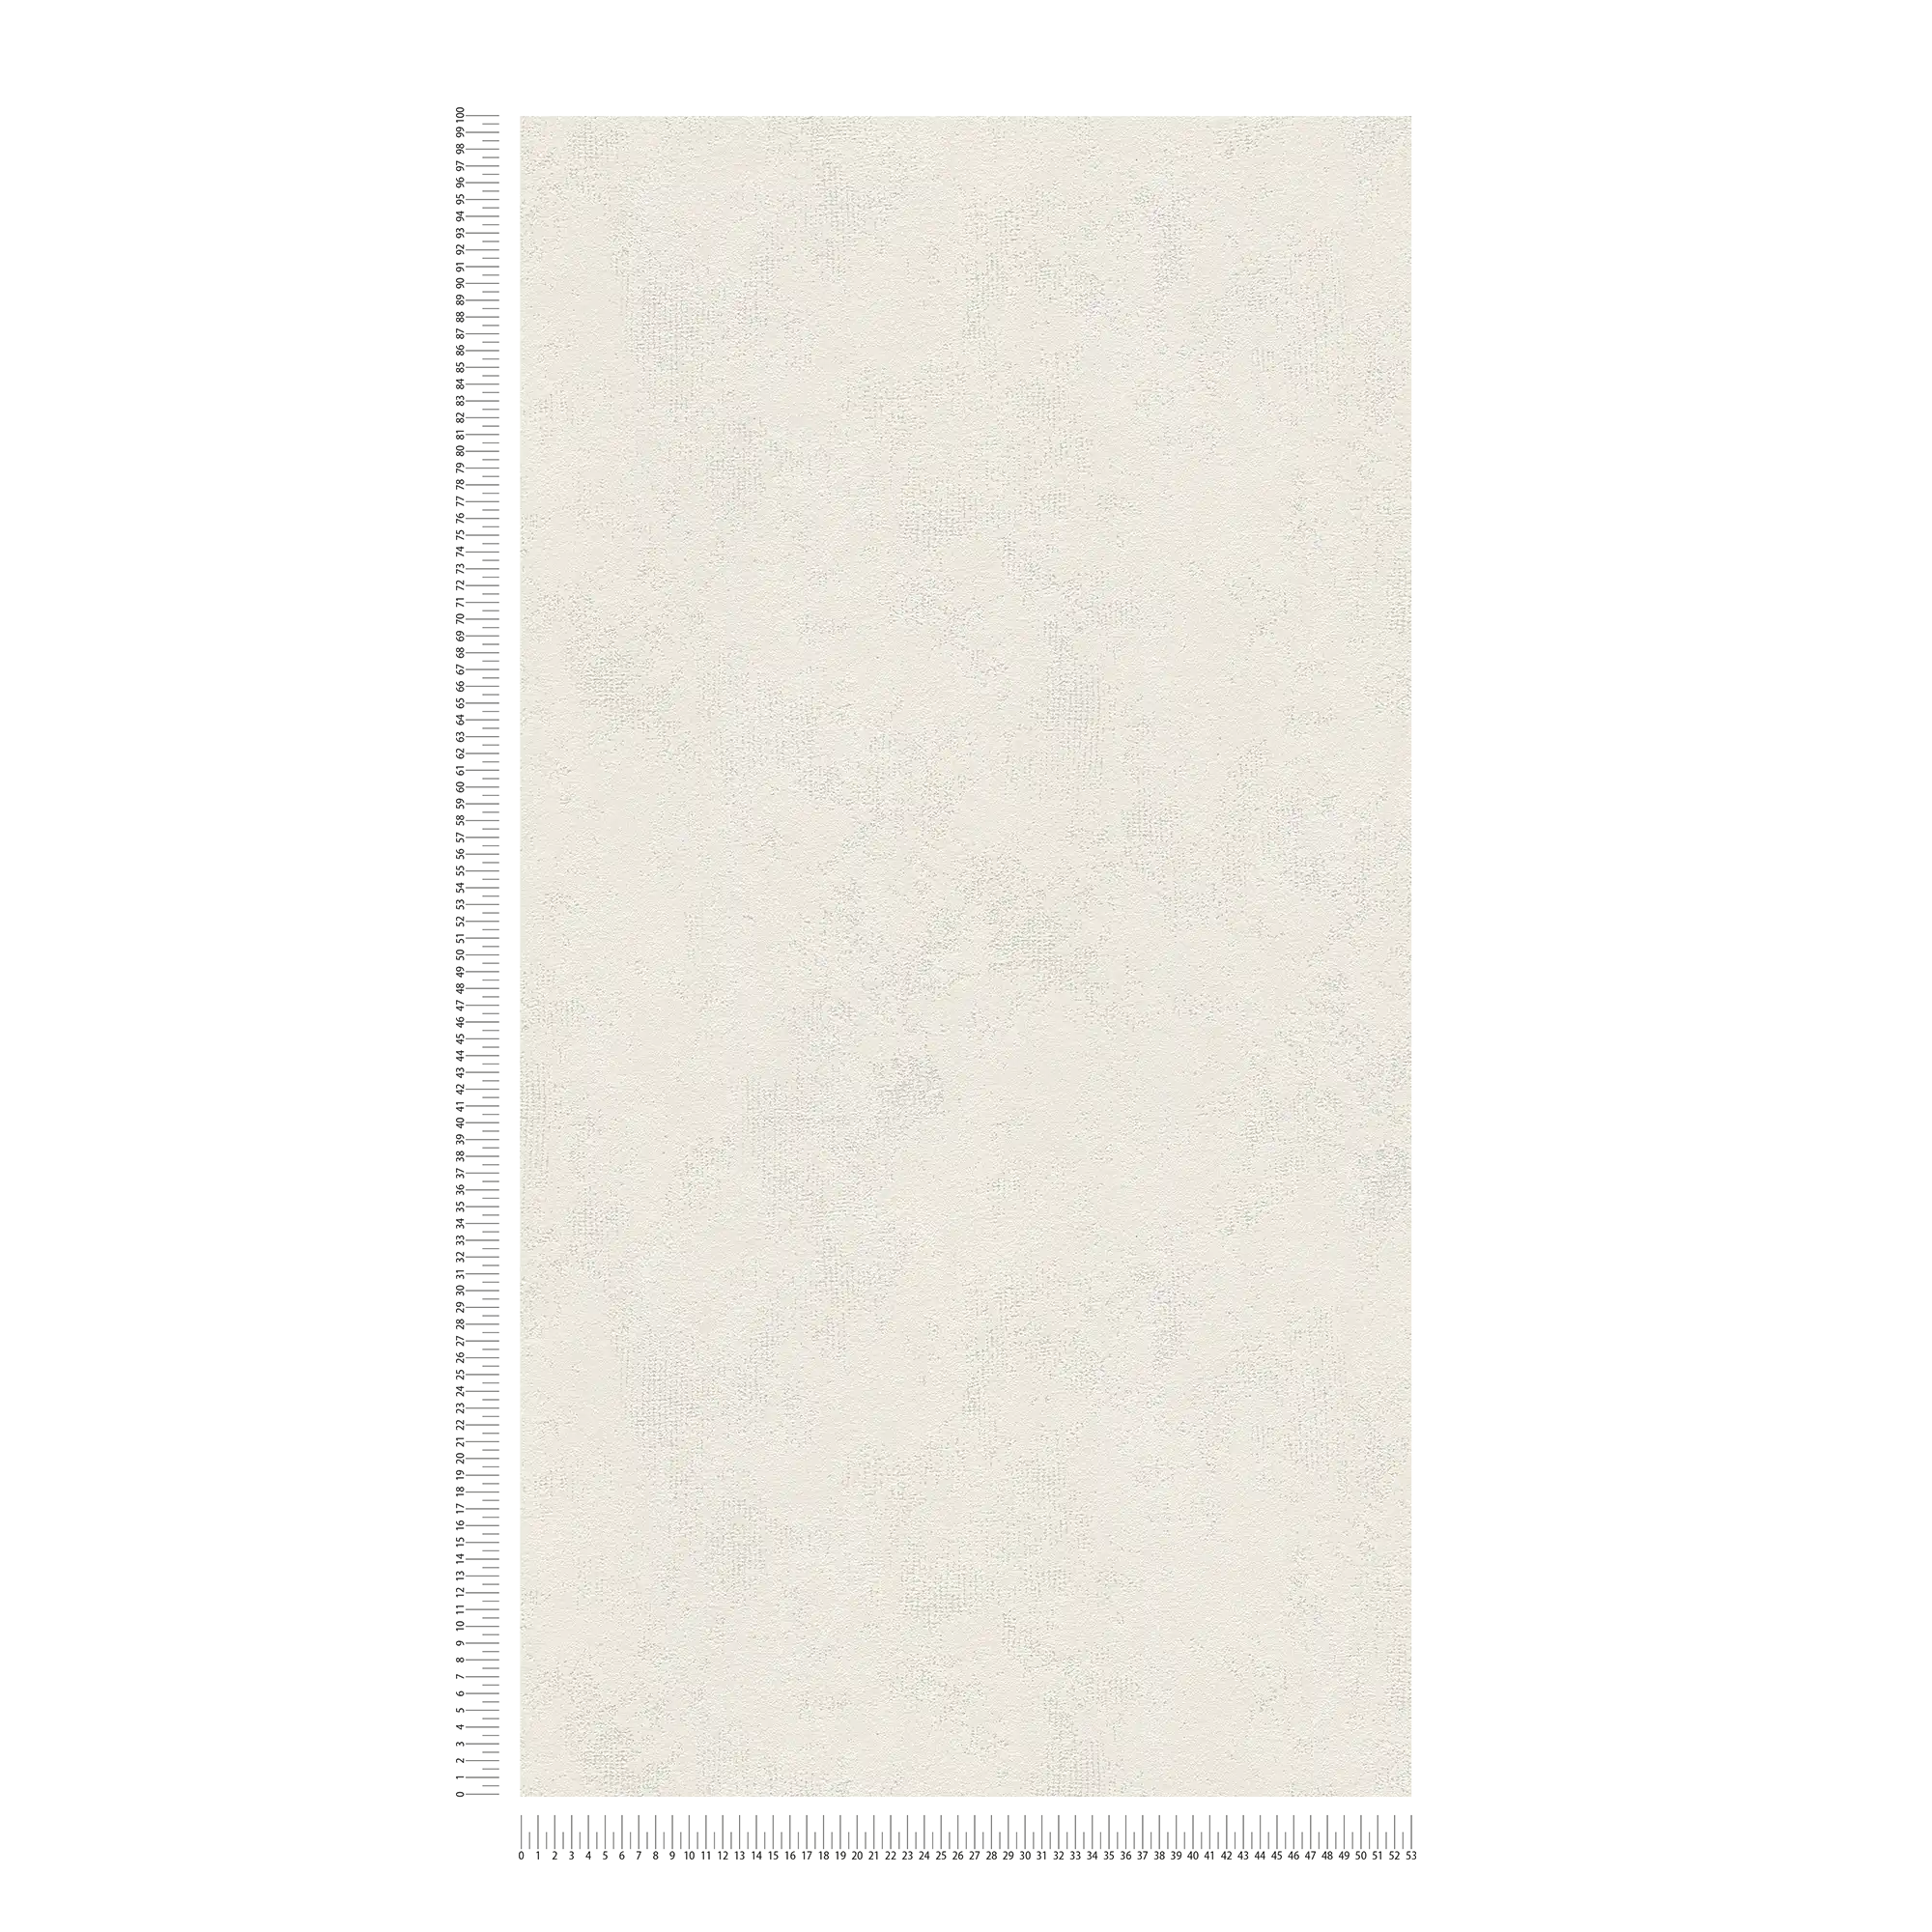             Used Look papier peint en papier intissé aspect plâtre avec hachures de couleur - crème
        